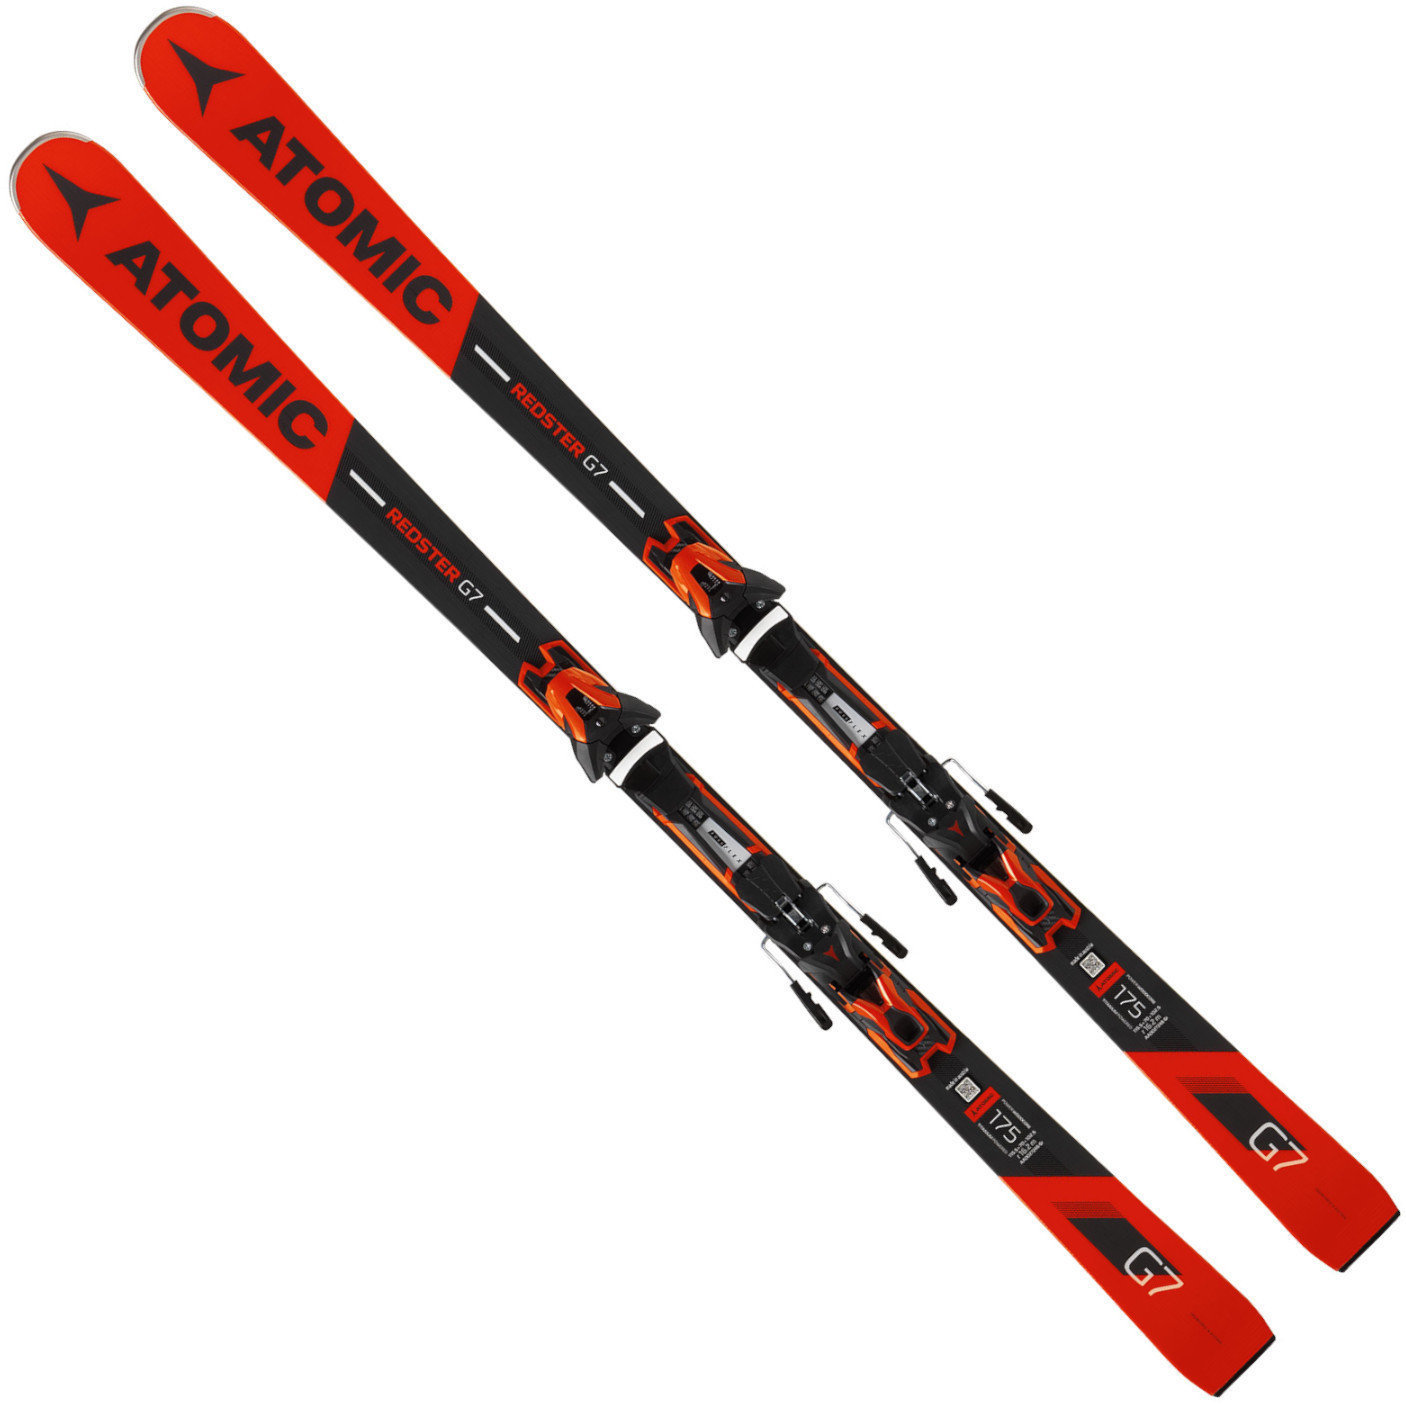 Skije Atomic Redster G7 + FT 12 GW 175 18/19 skis